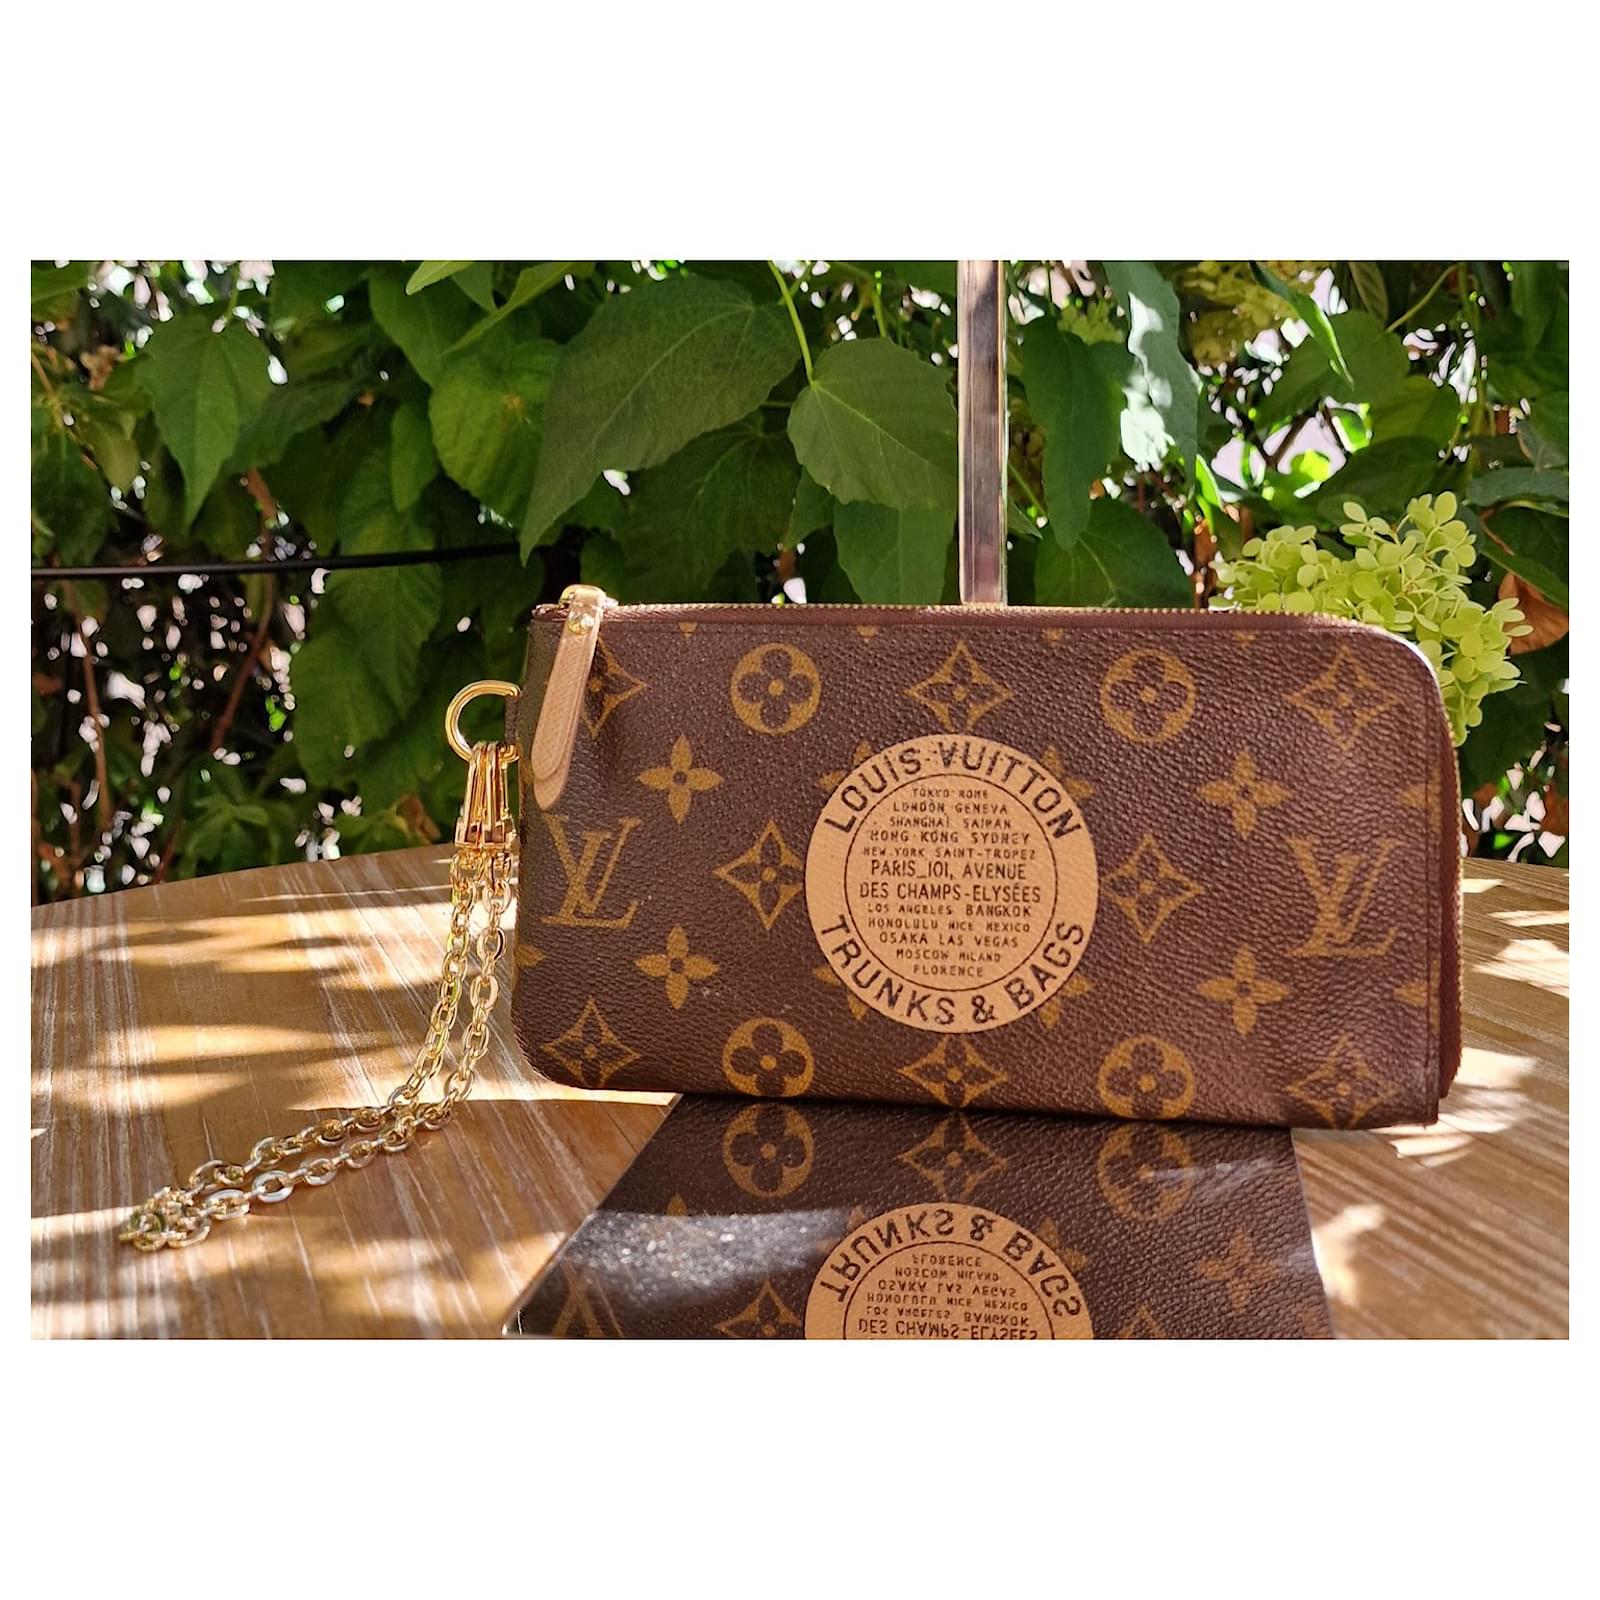 Louis Vuitton Monogram Canvas Trunks & Bags Complice QJB2L70T09006